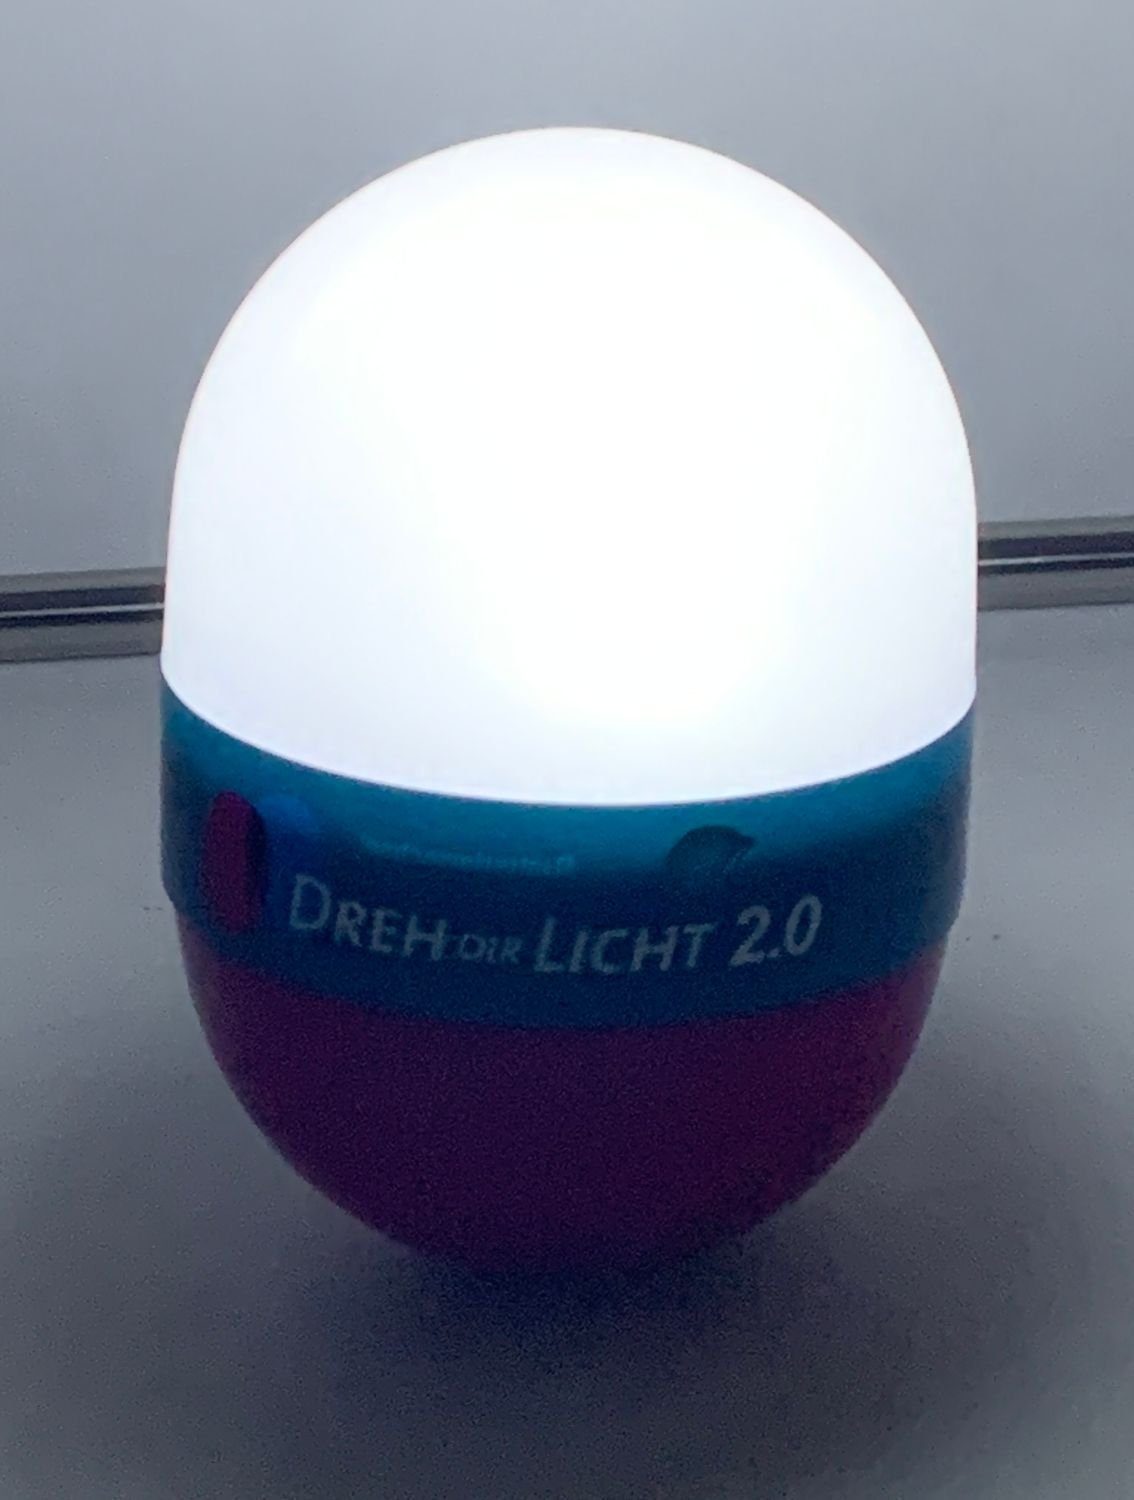 BURI LED Dekolicht Dreh Dir 2.0 Licht Campinglampe Nachtlicht Taschenlampe grün Leselam 12,5cm